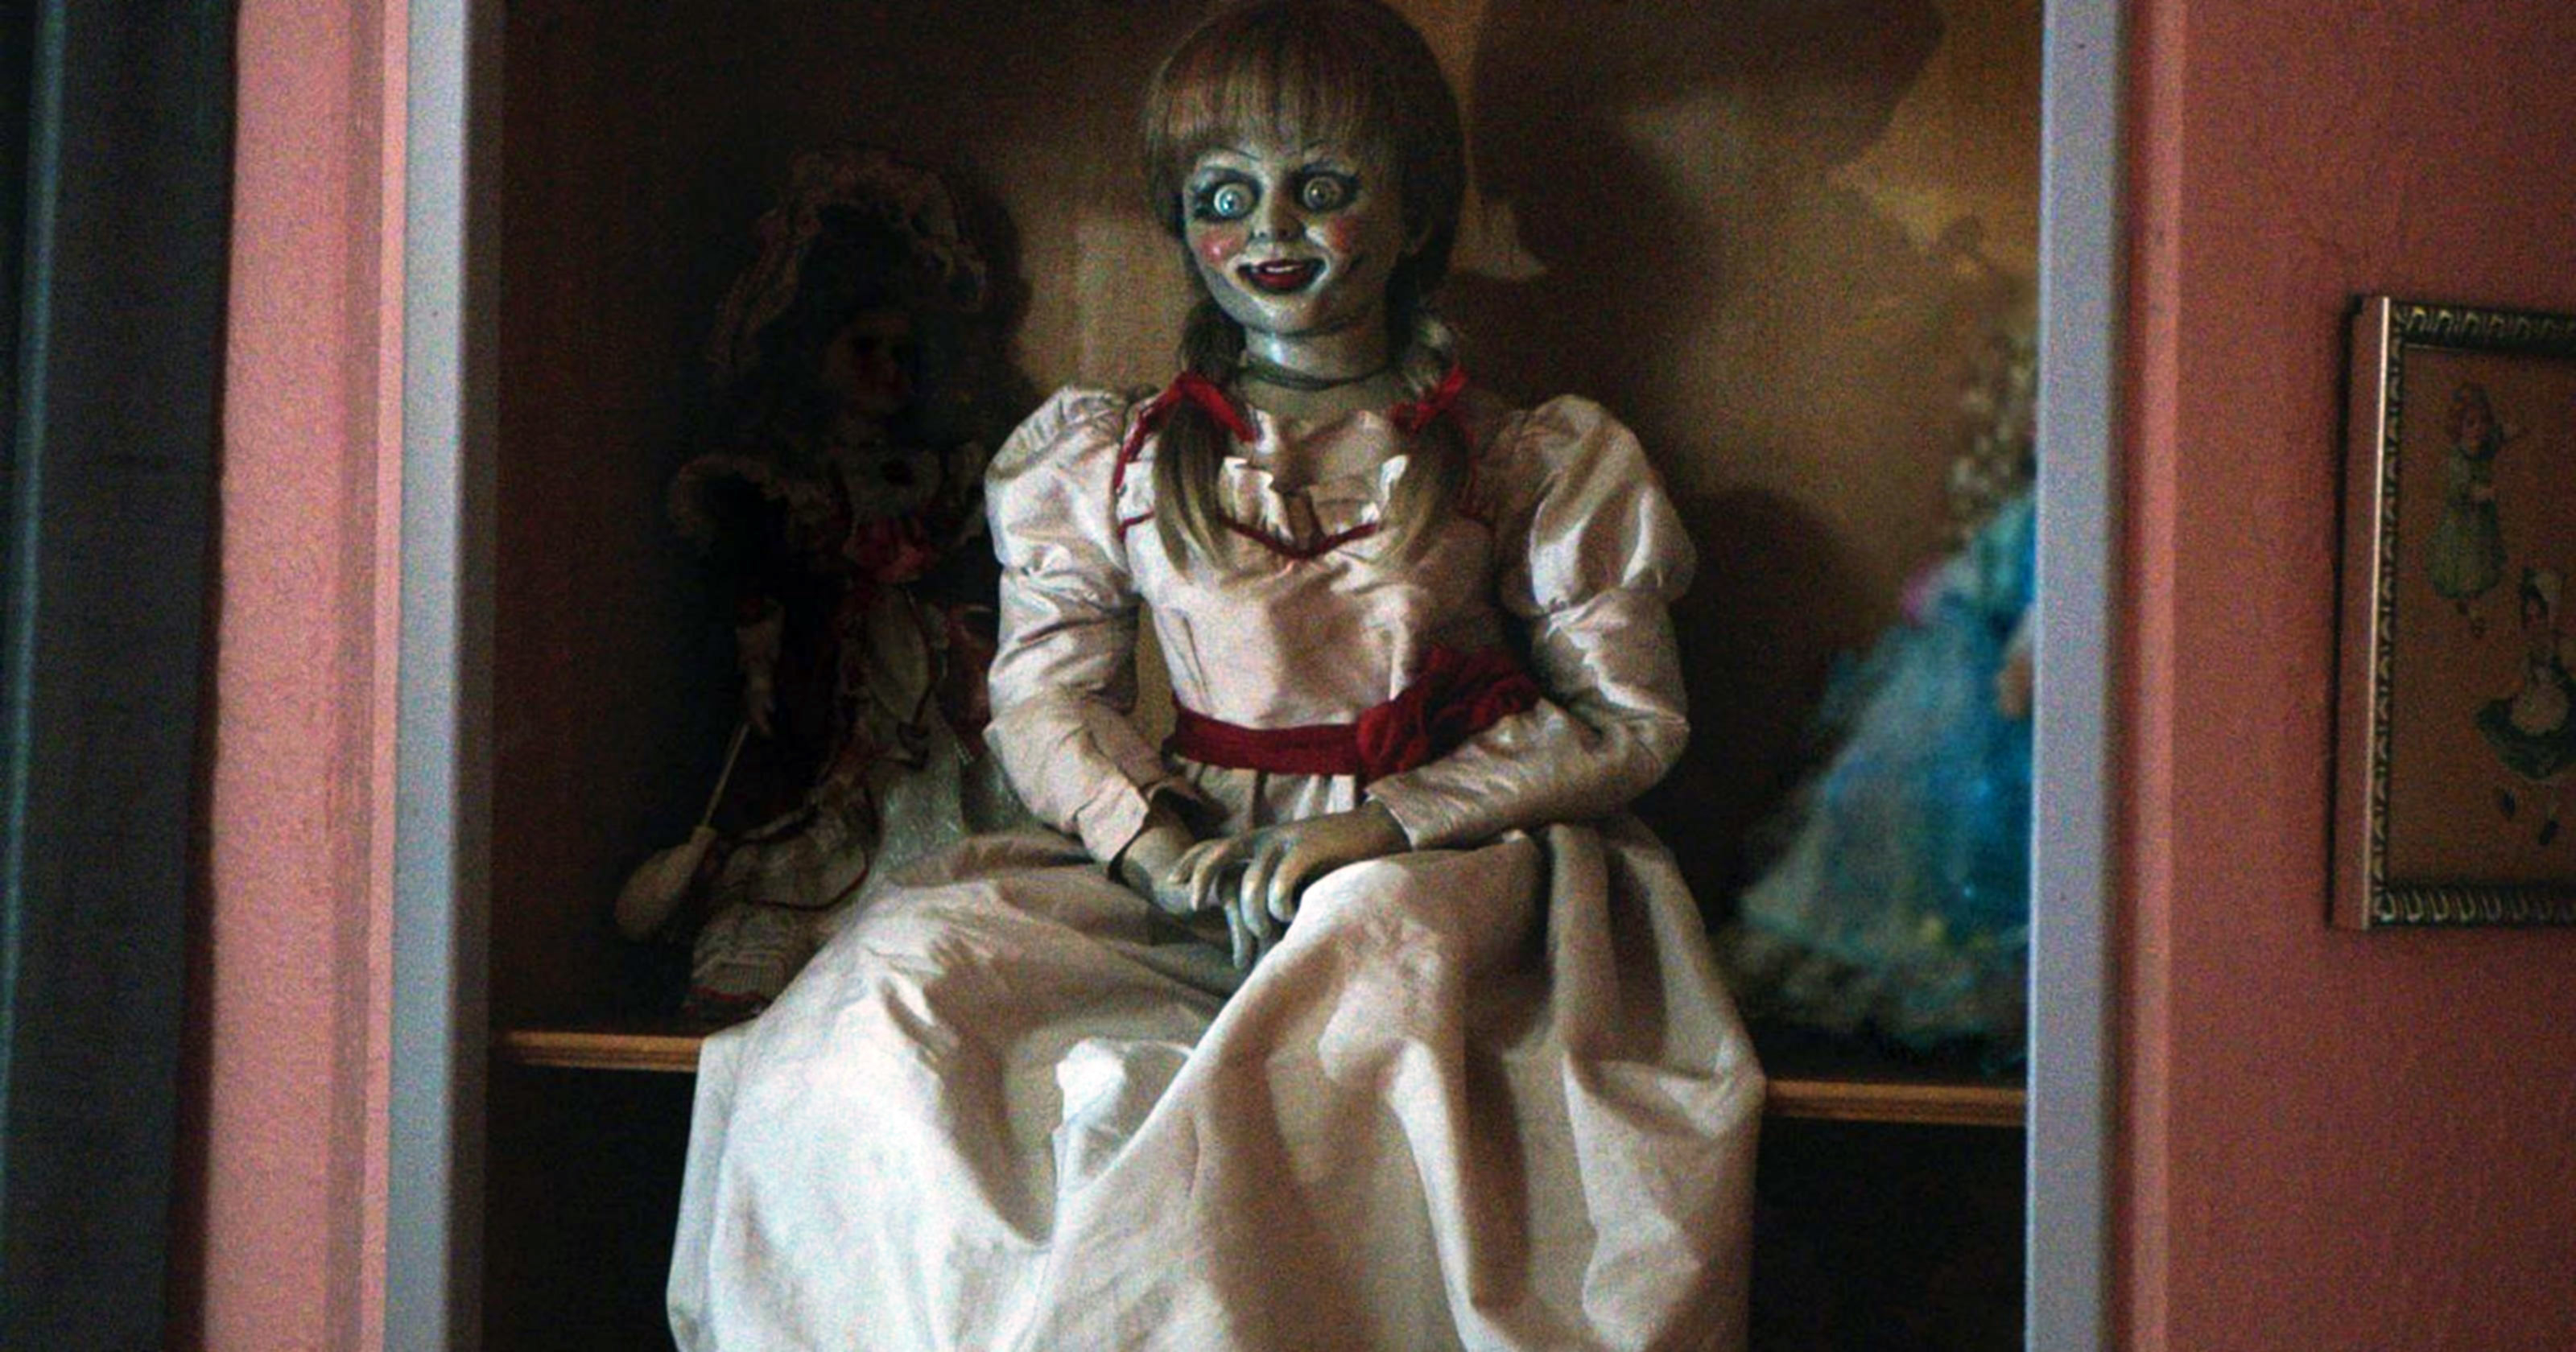 The Annabelle doll